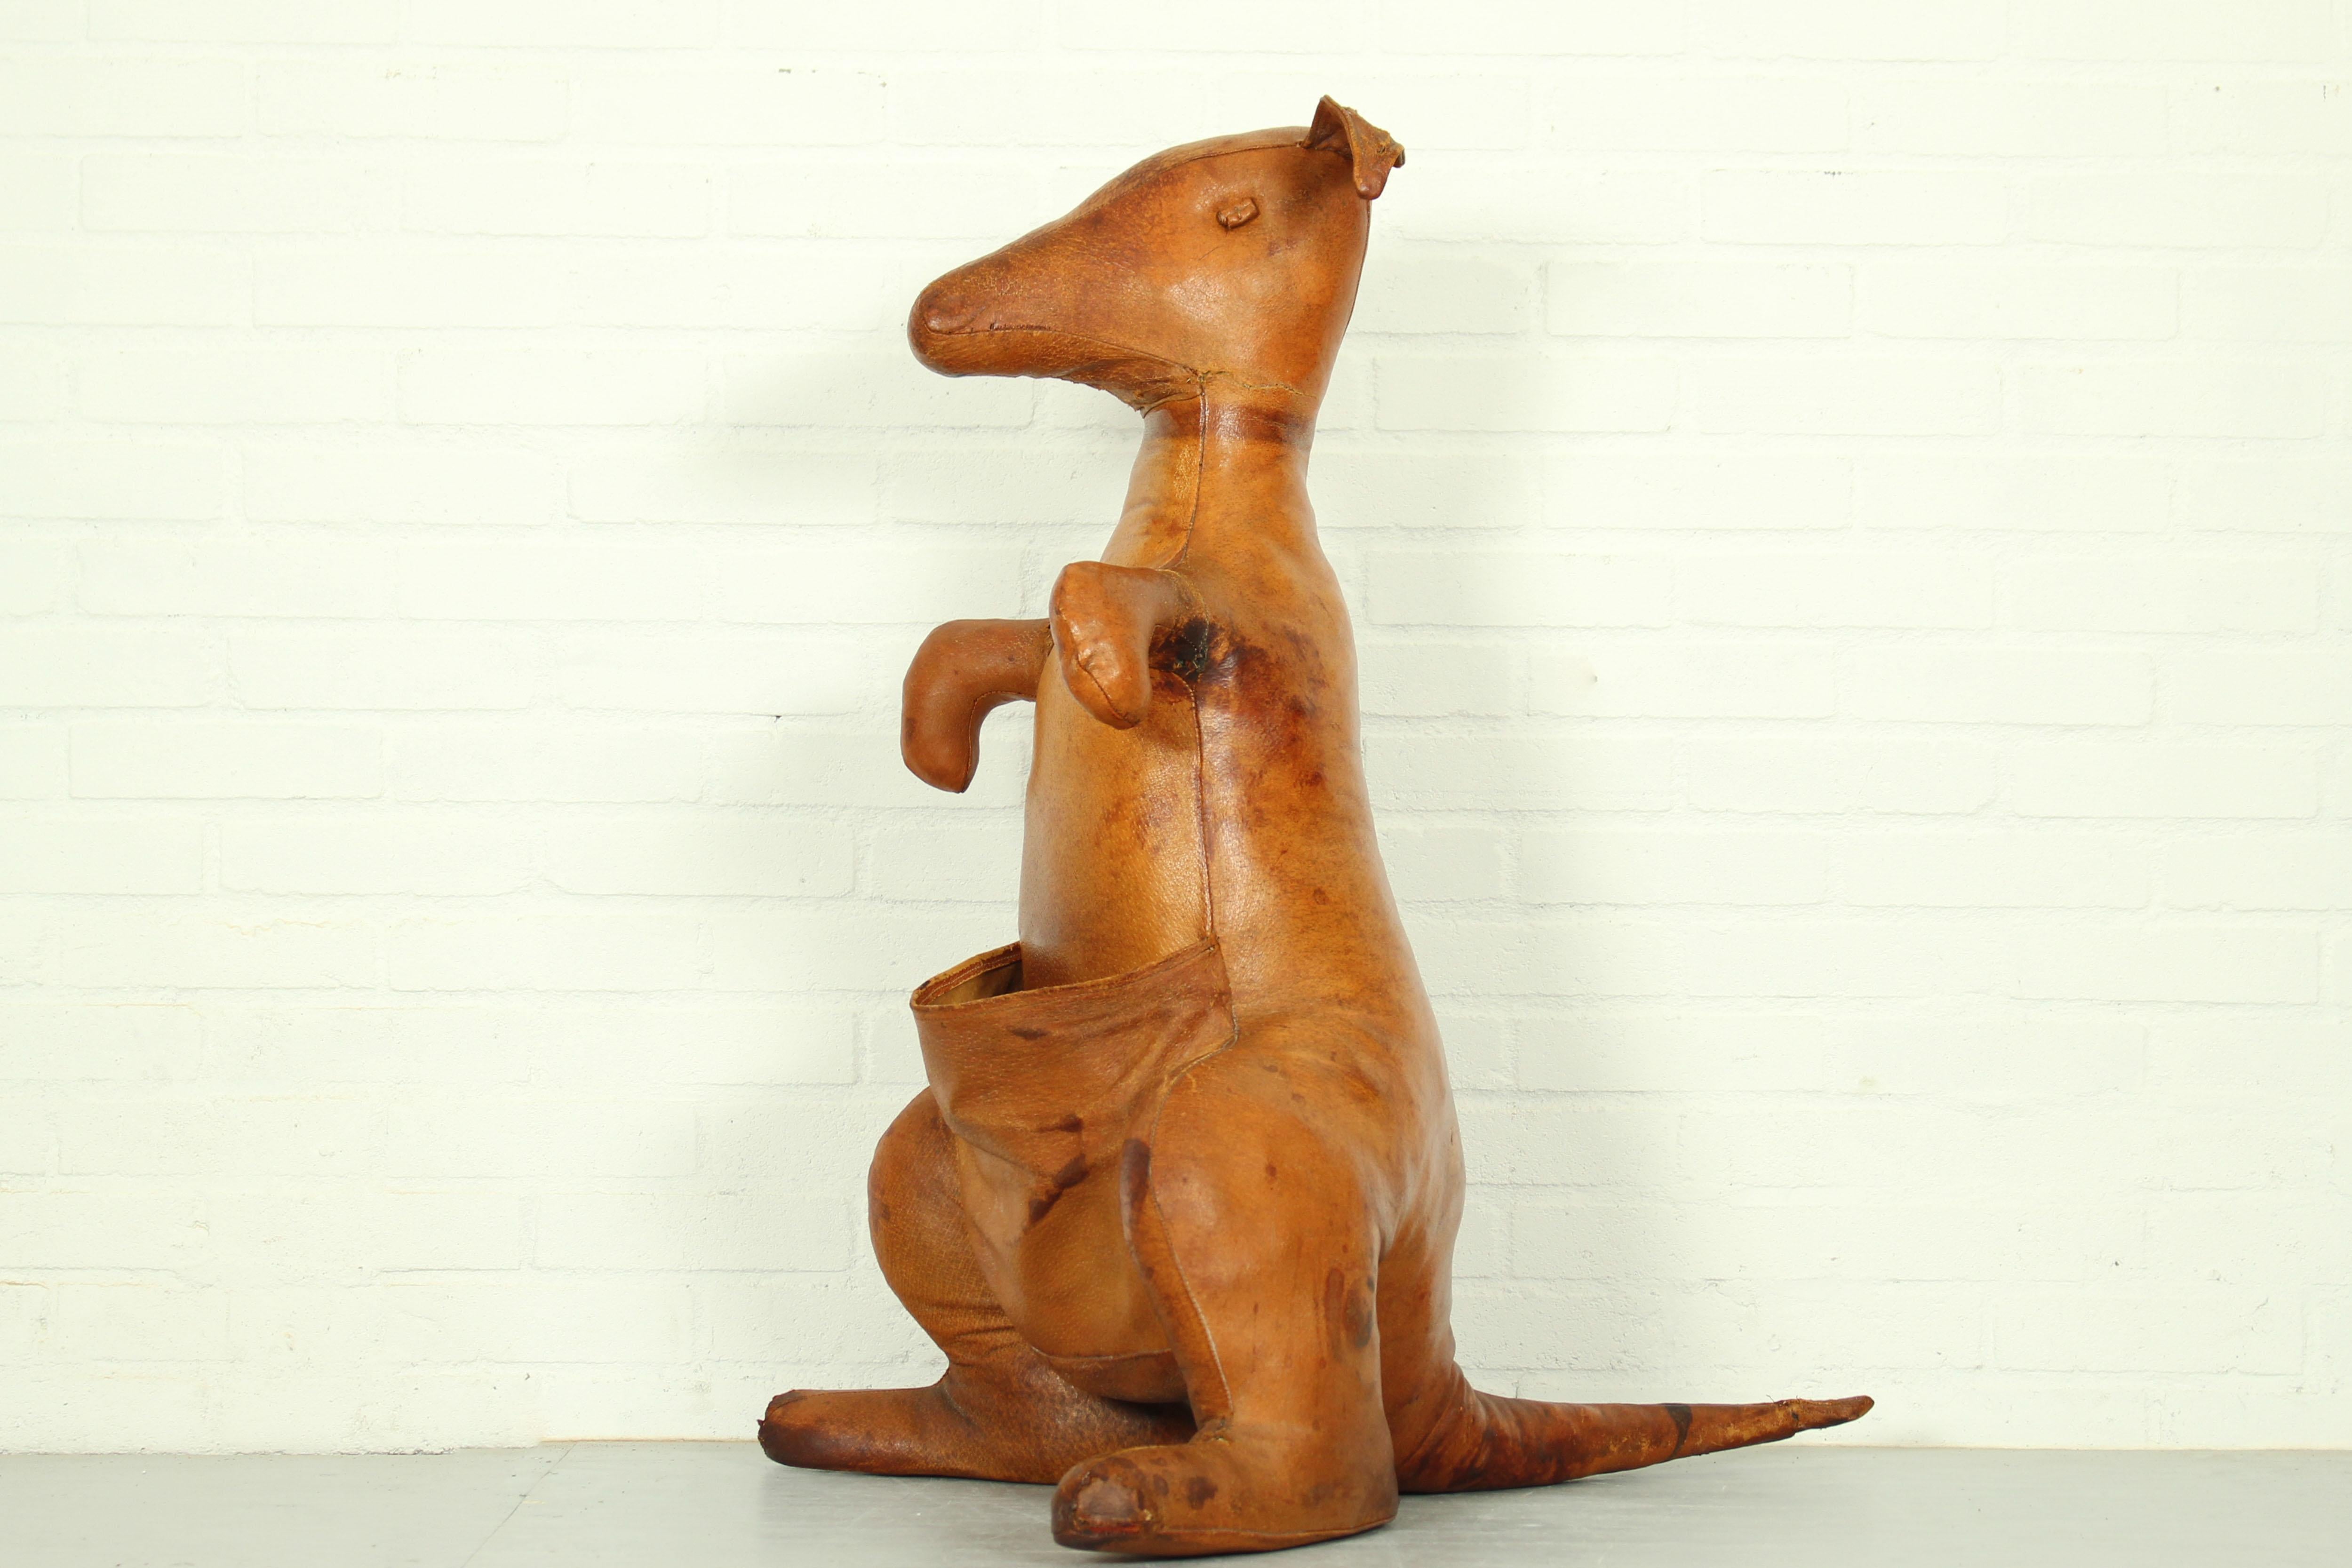 Porte-revue décoratif en cuir Kangaroo conçu par Dimitri Omersa, Angleterre 1960. Le Kangourou est l'un des animaux les plus rares et les plus beaux produits par Dimitri Omersa pour Liberty's. Ce kangourou a été fabriqué en cuir de vachette pleine